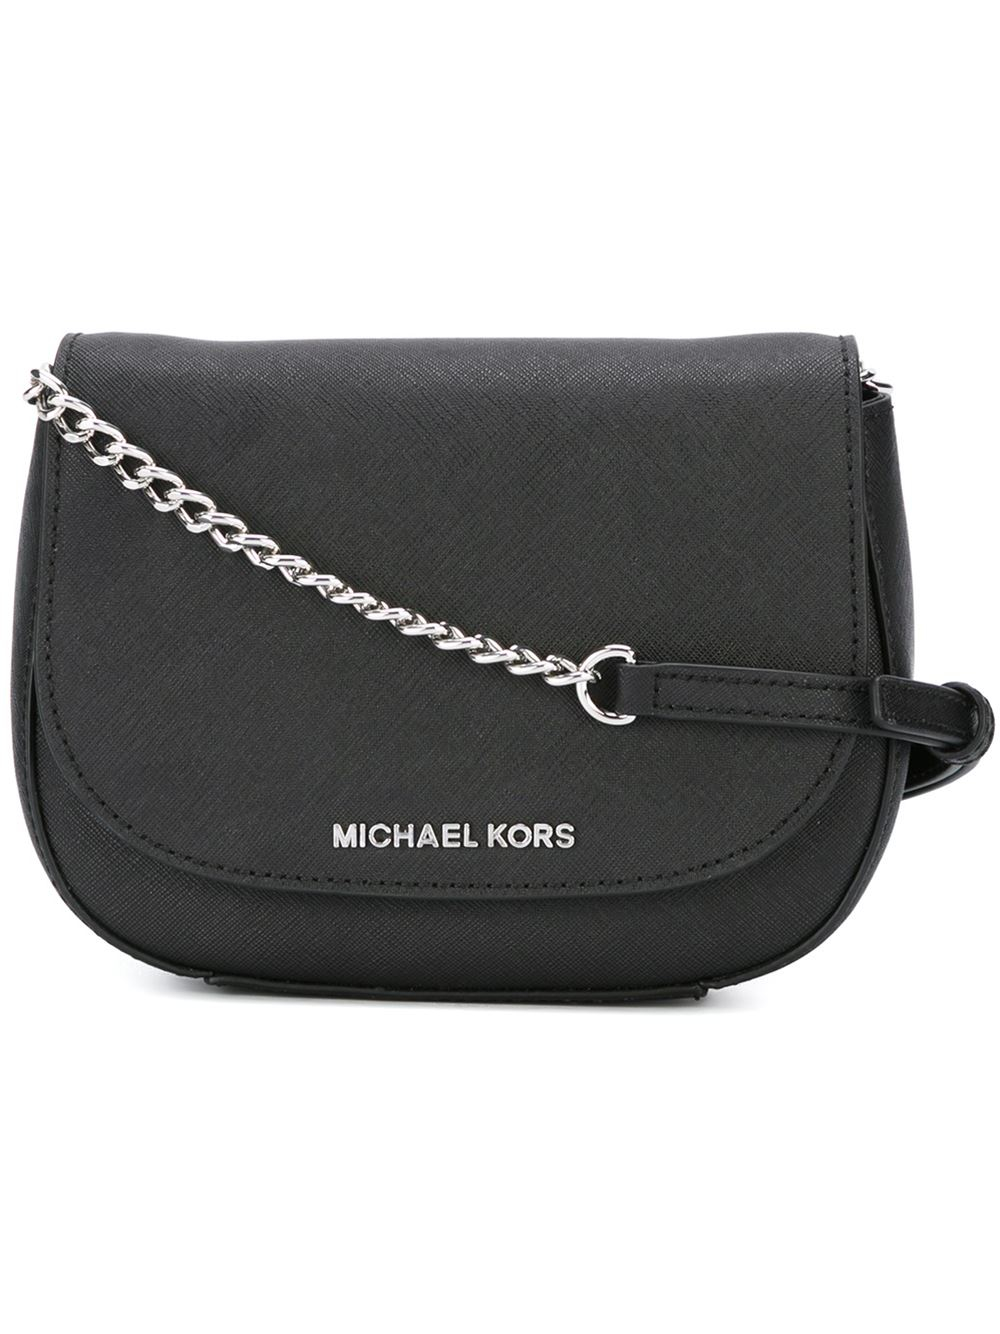 Black Crossbody Bag Michael Kors | IQS Executive